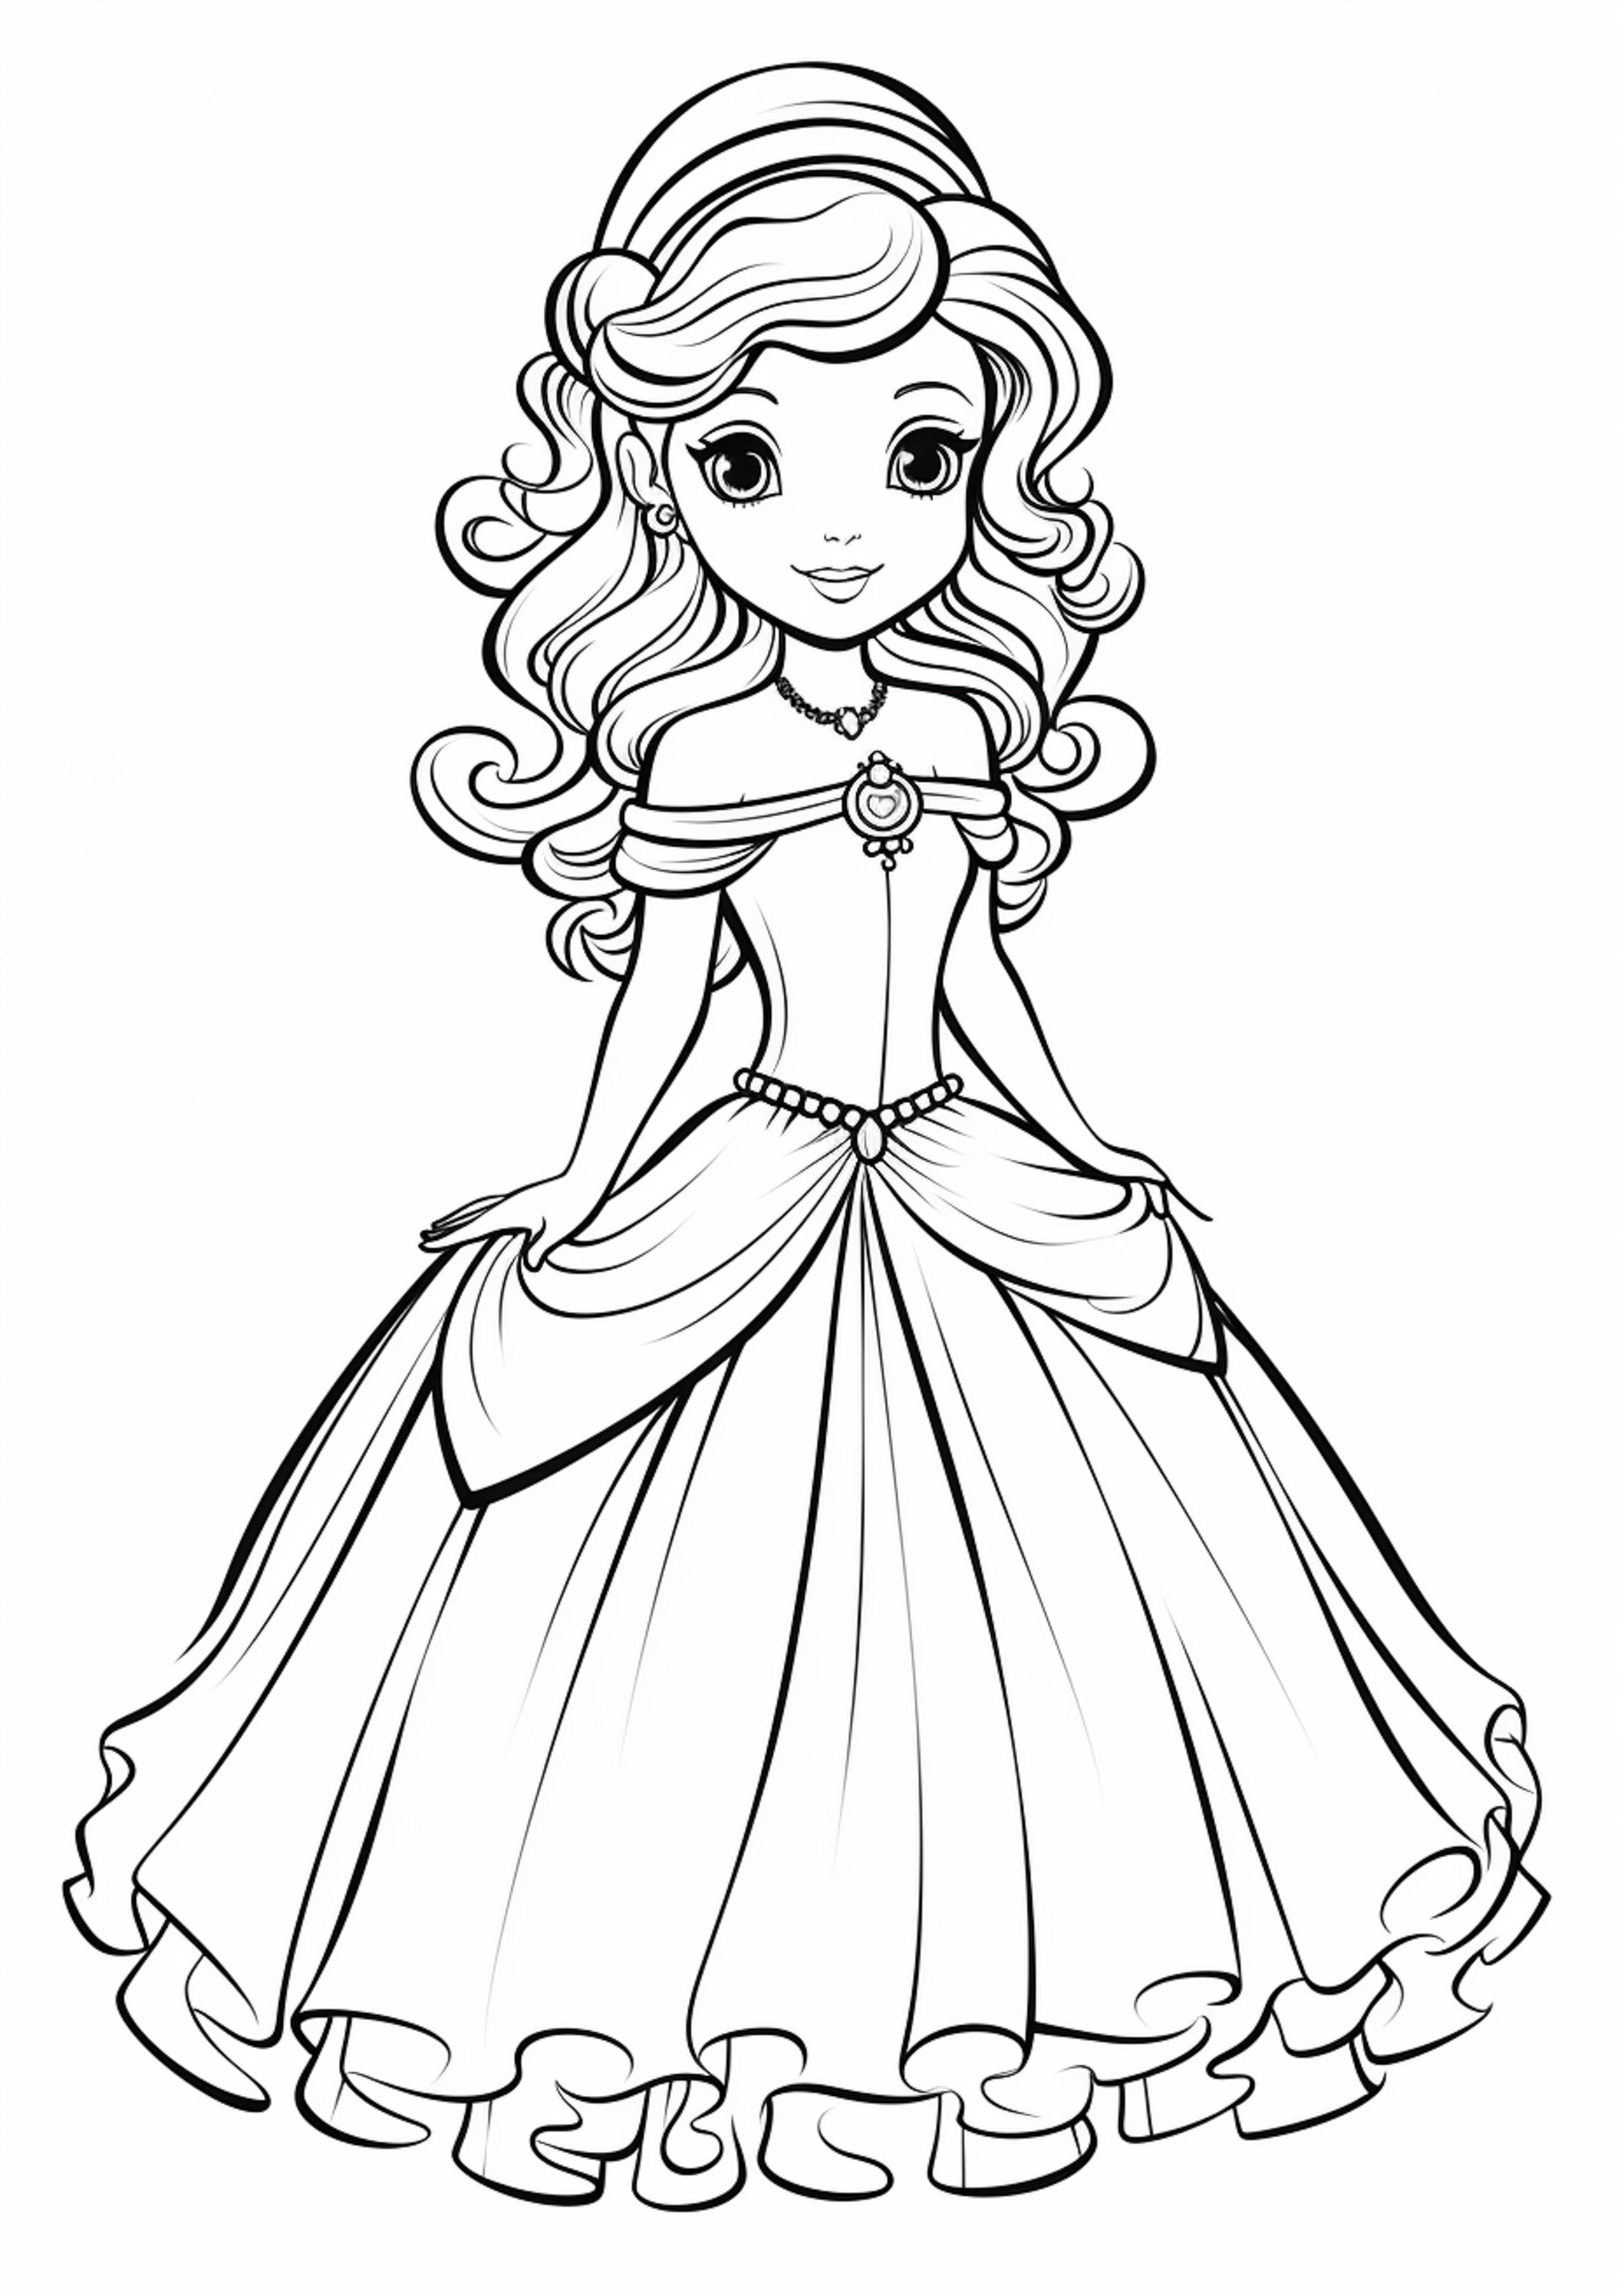 Раскраска принцесса в красивом платье формата А4 в высоком качестве